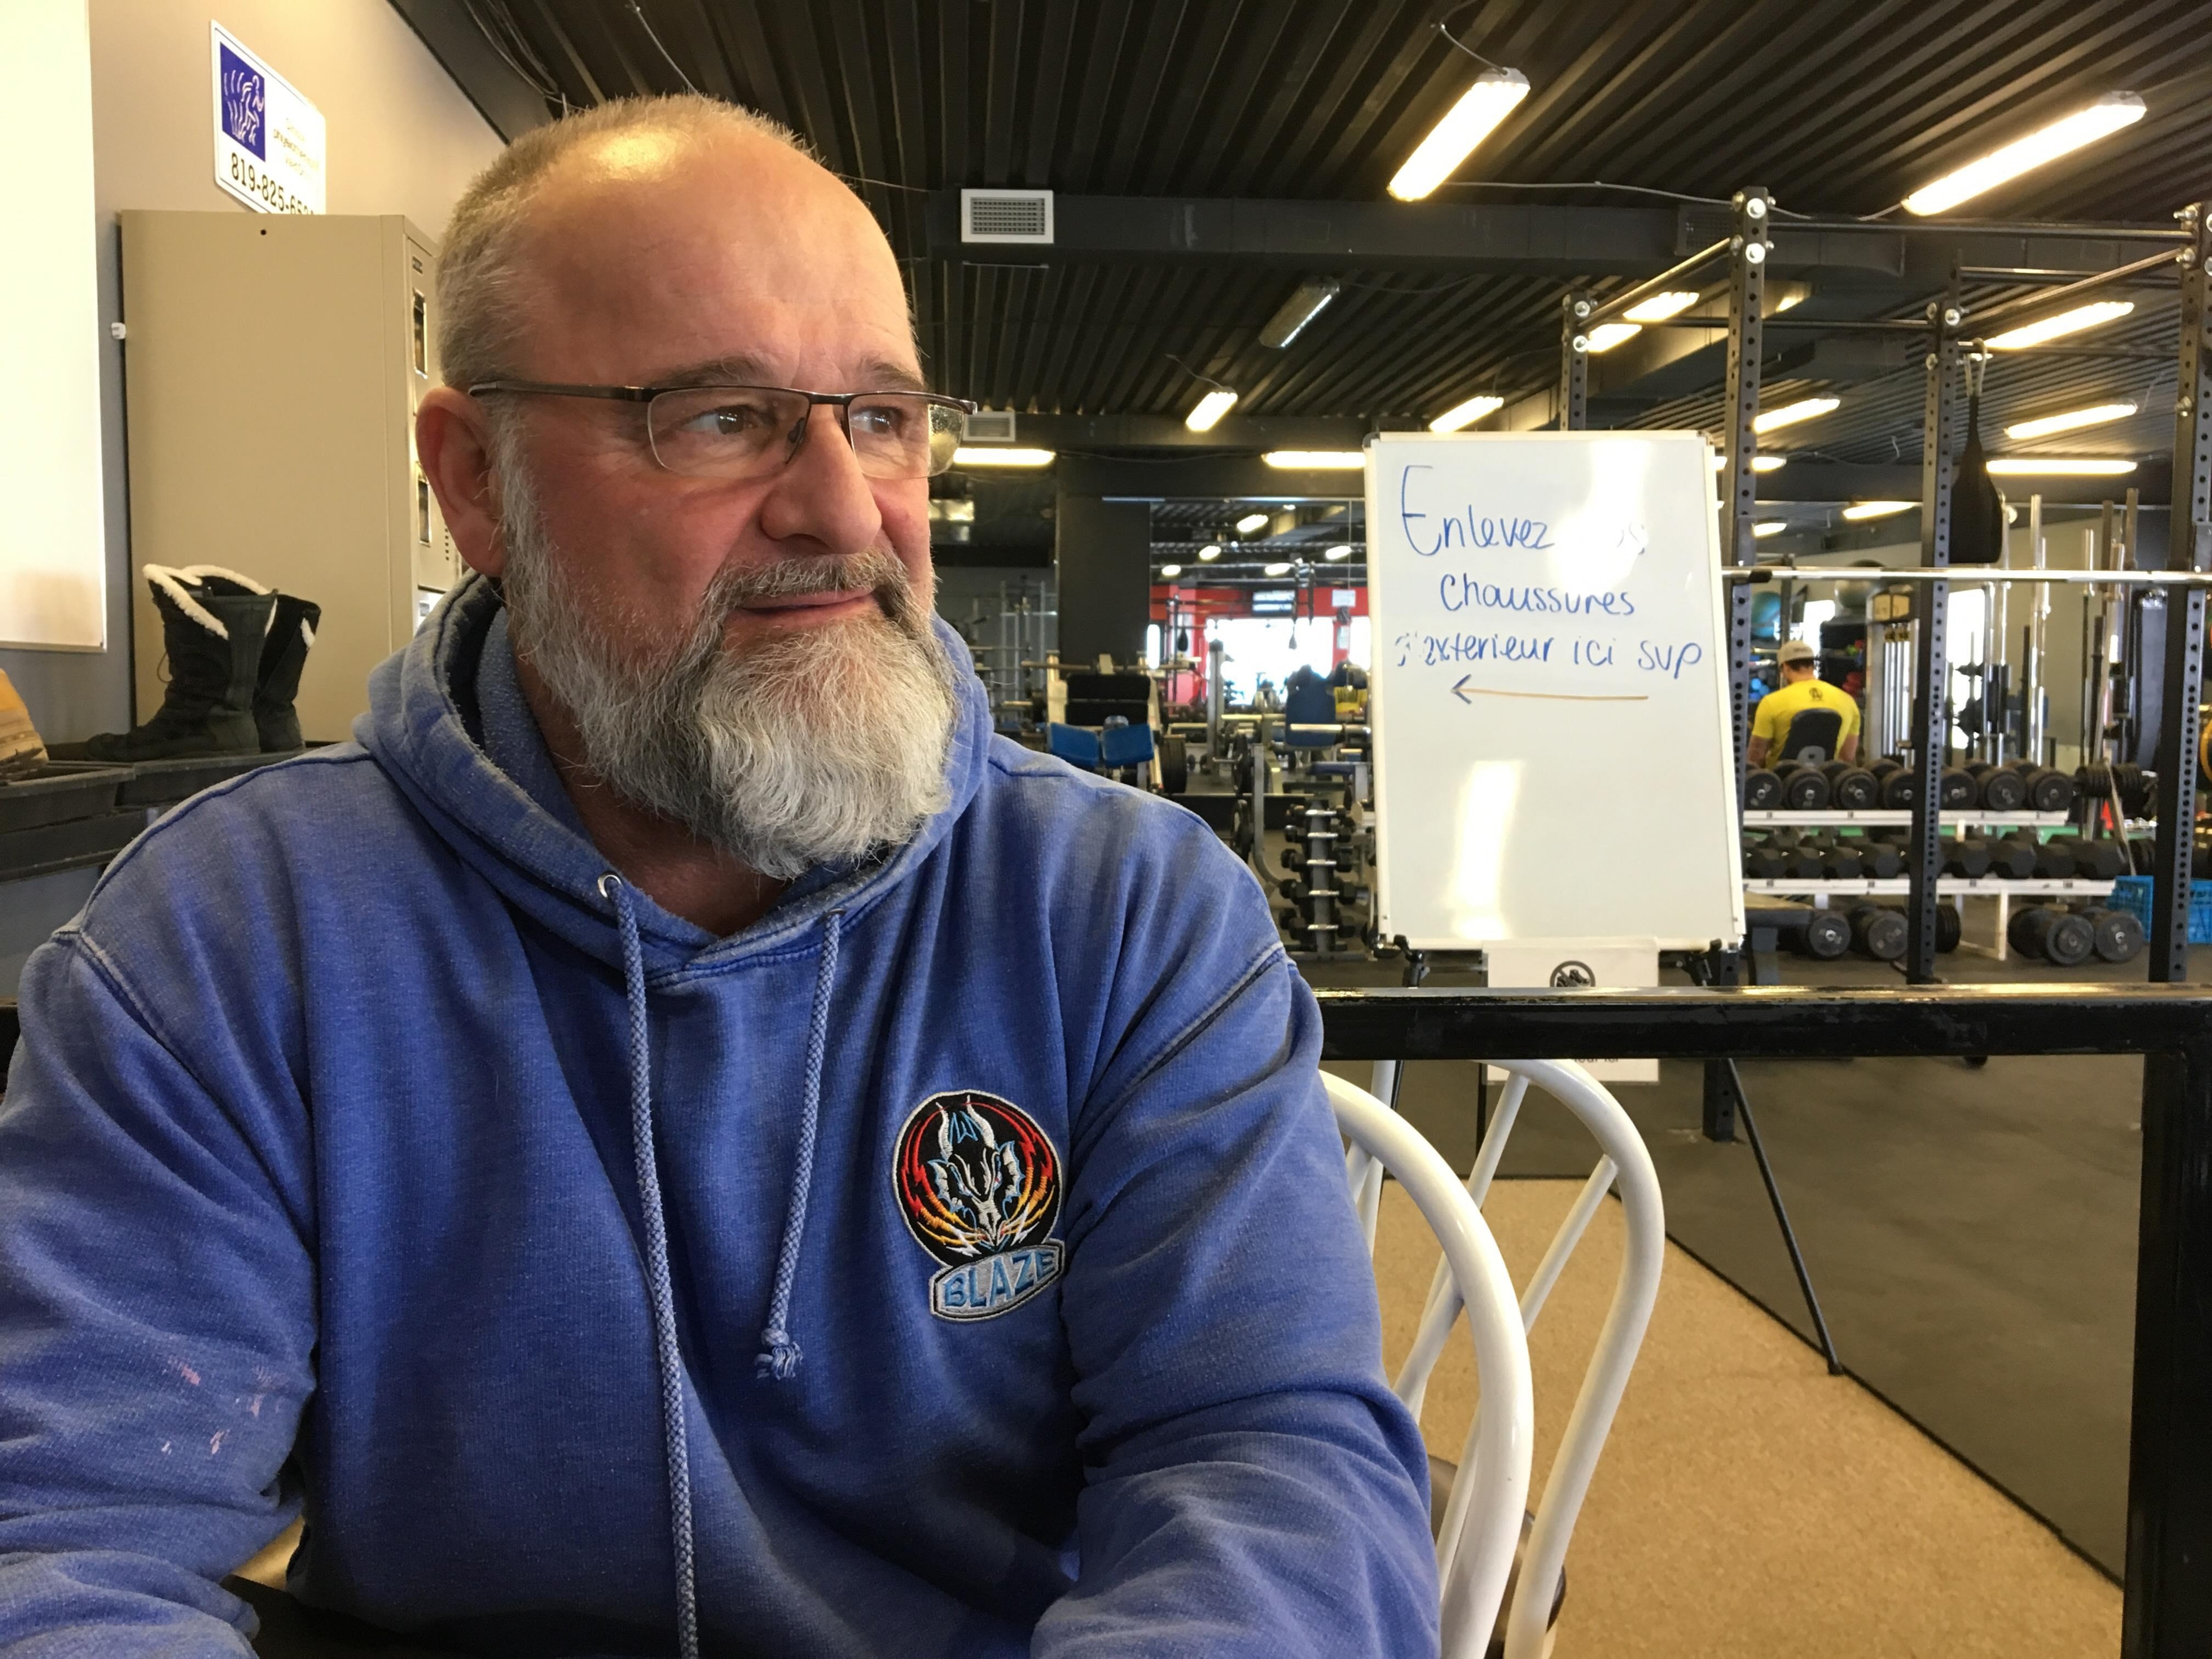 Un homme portant des lunettes et une barbe regarde au loin dans une salle de conditionnement physique.